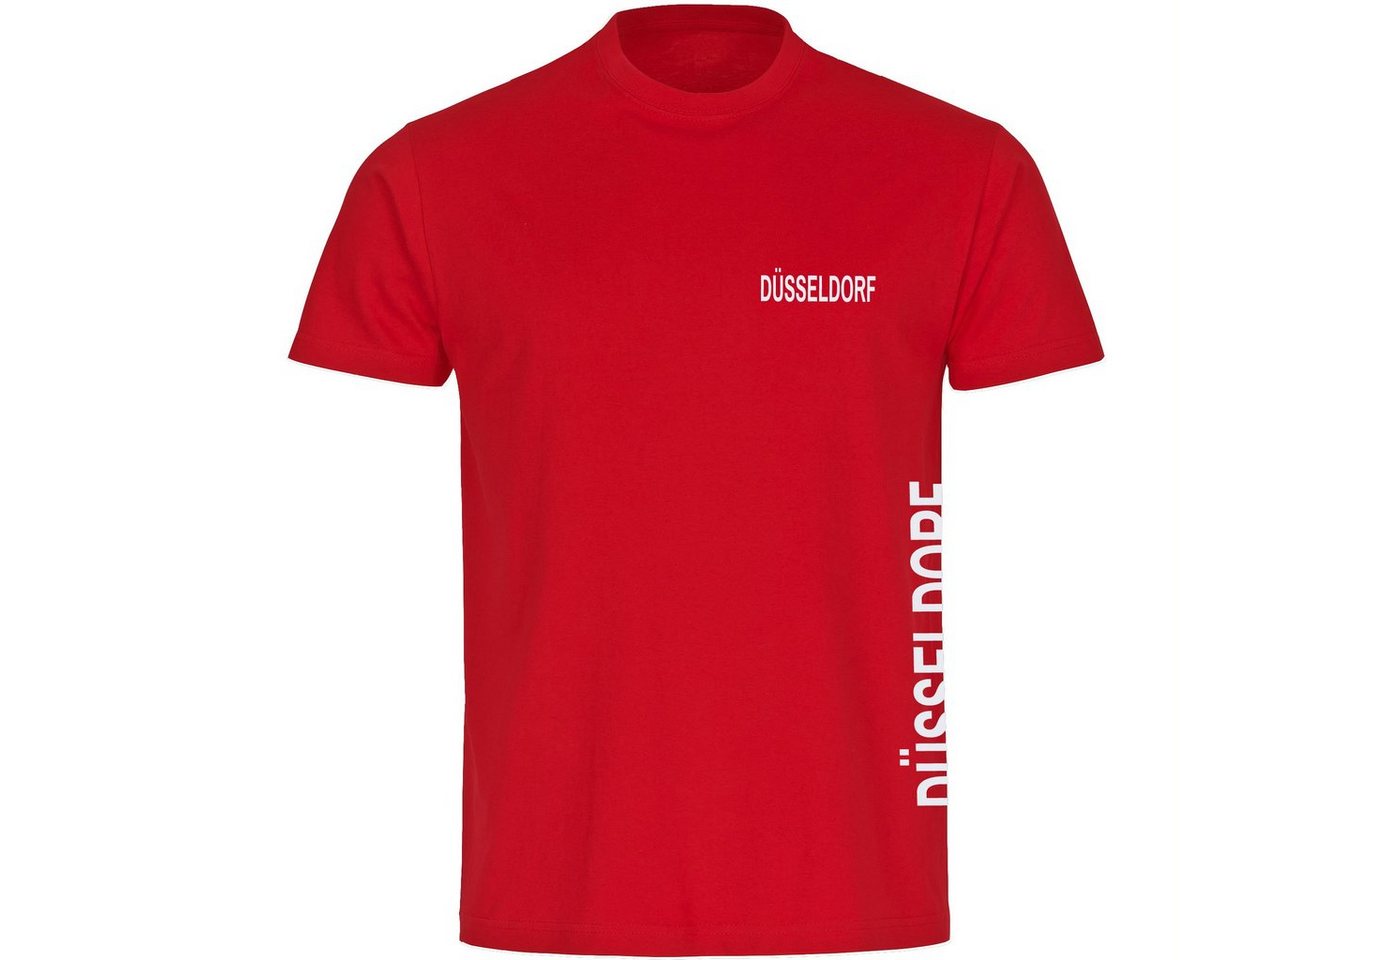 multifanshop T-Shirt Herren Düsseldorf - Brust & Seite - Männer von multifanshop